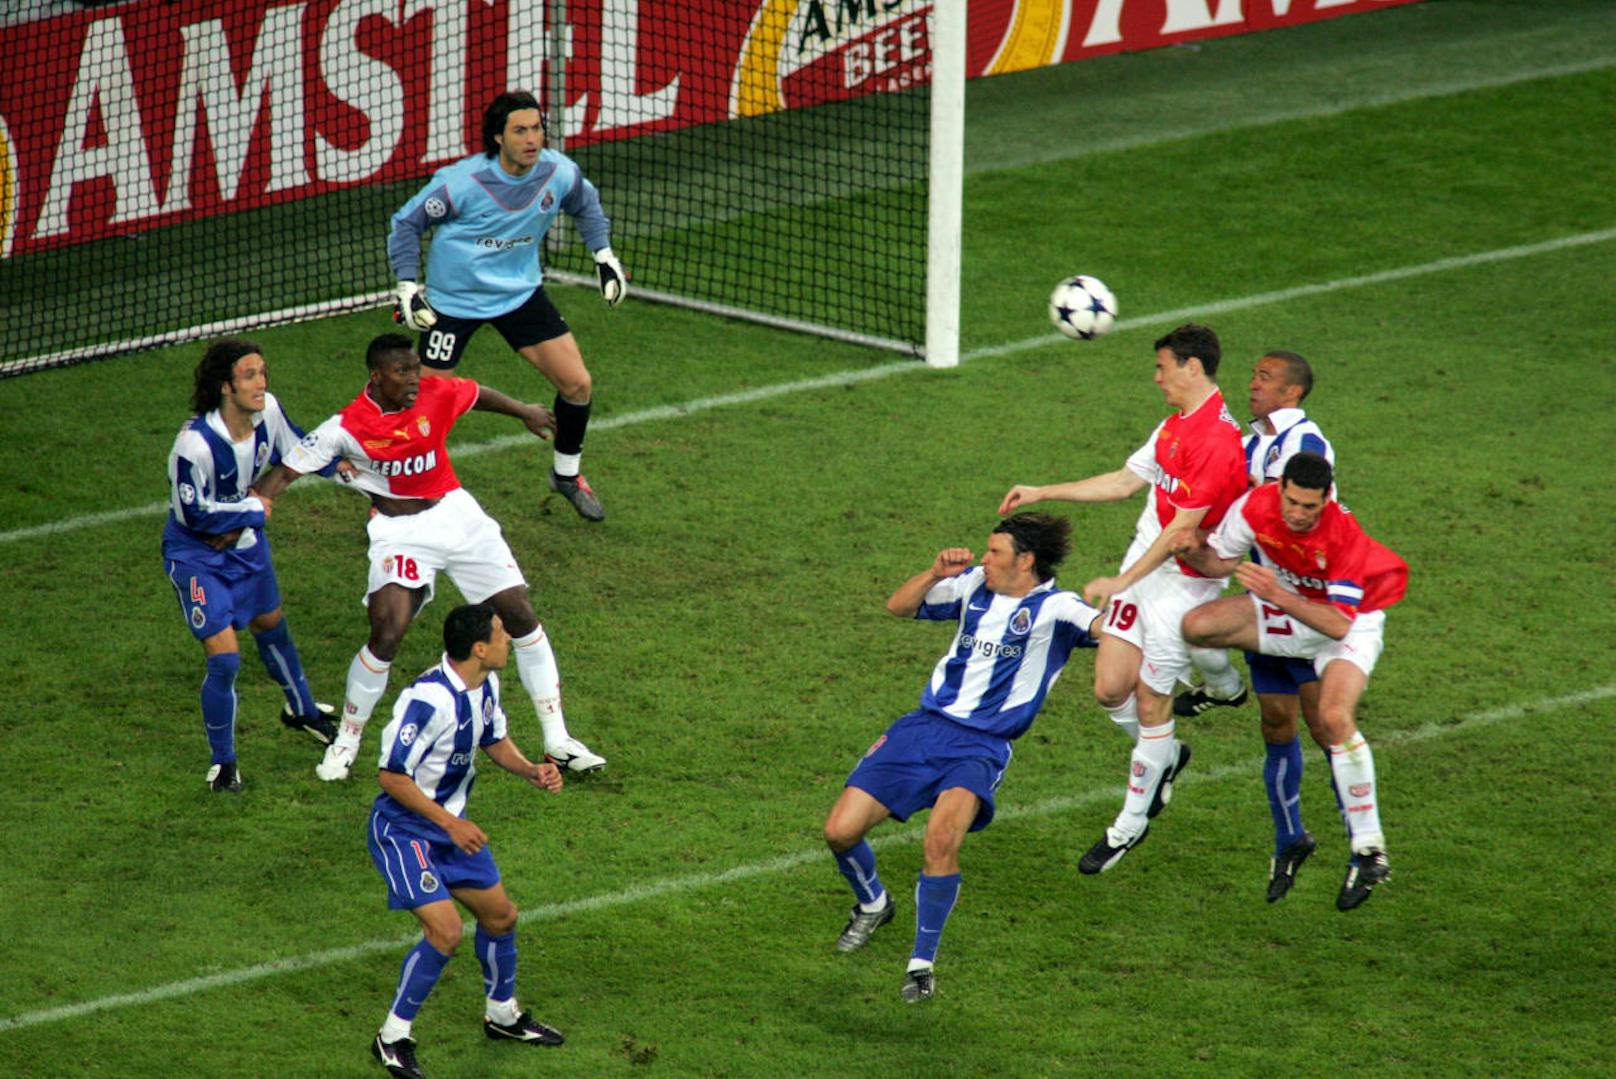 2004 coachte Jose Mourinho überraschend den FC Porto zum Titelgewinn. 3:0 gewann das Team gegen den AC Monaco.